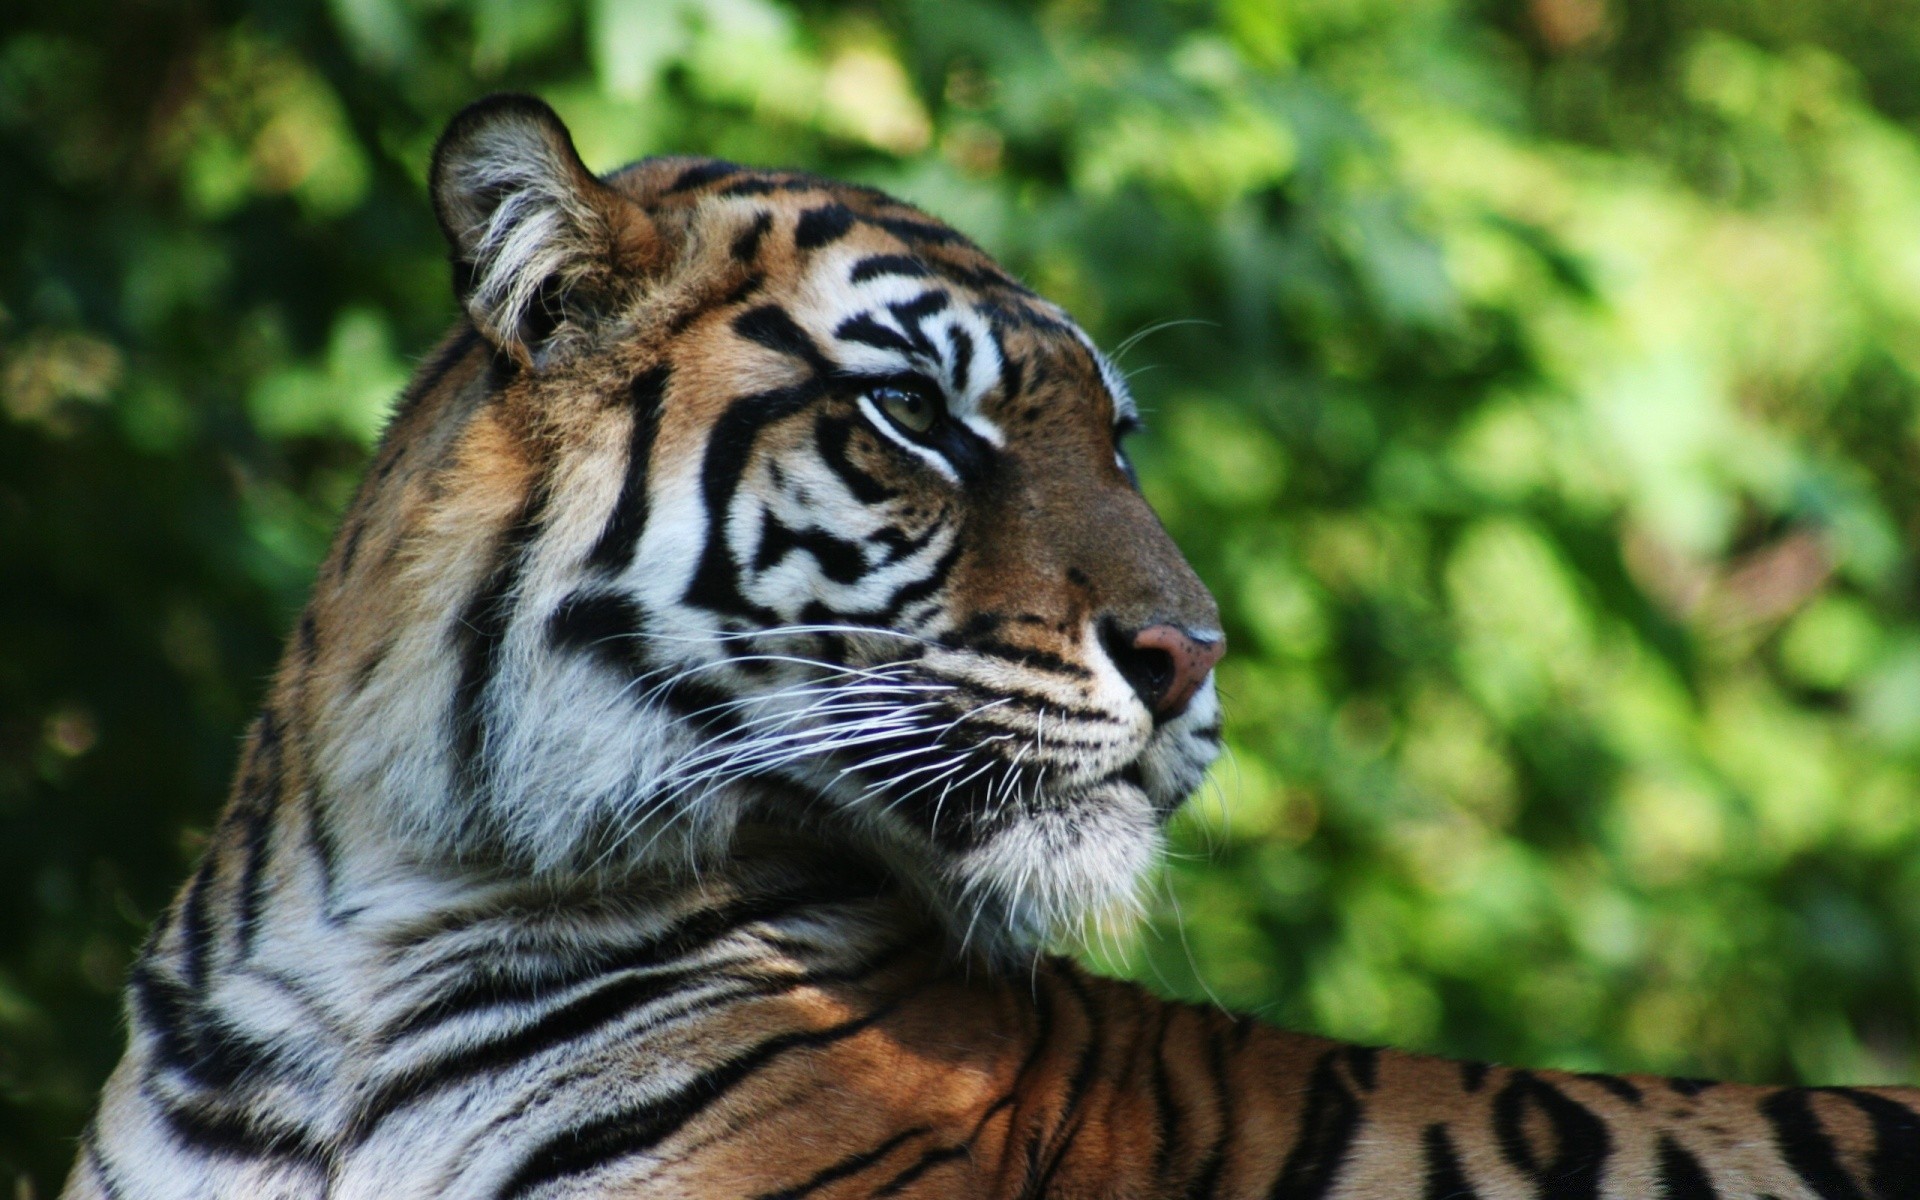 животные тигр дикой природы кошка джунгли зоопарк хищник млекопитающее полоса животное дикий опасность охотник мясоед глядя мех сафари большой злой охота природа